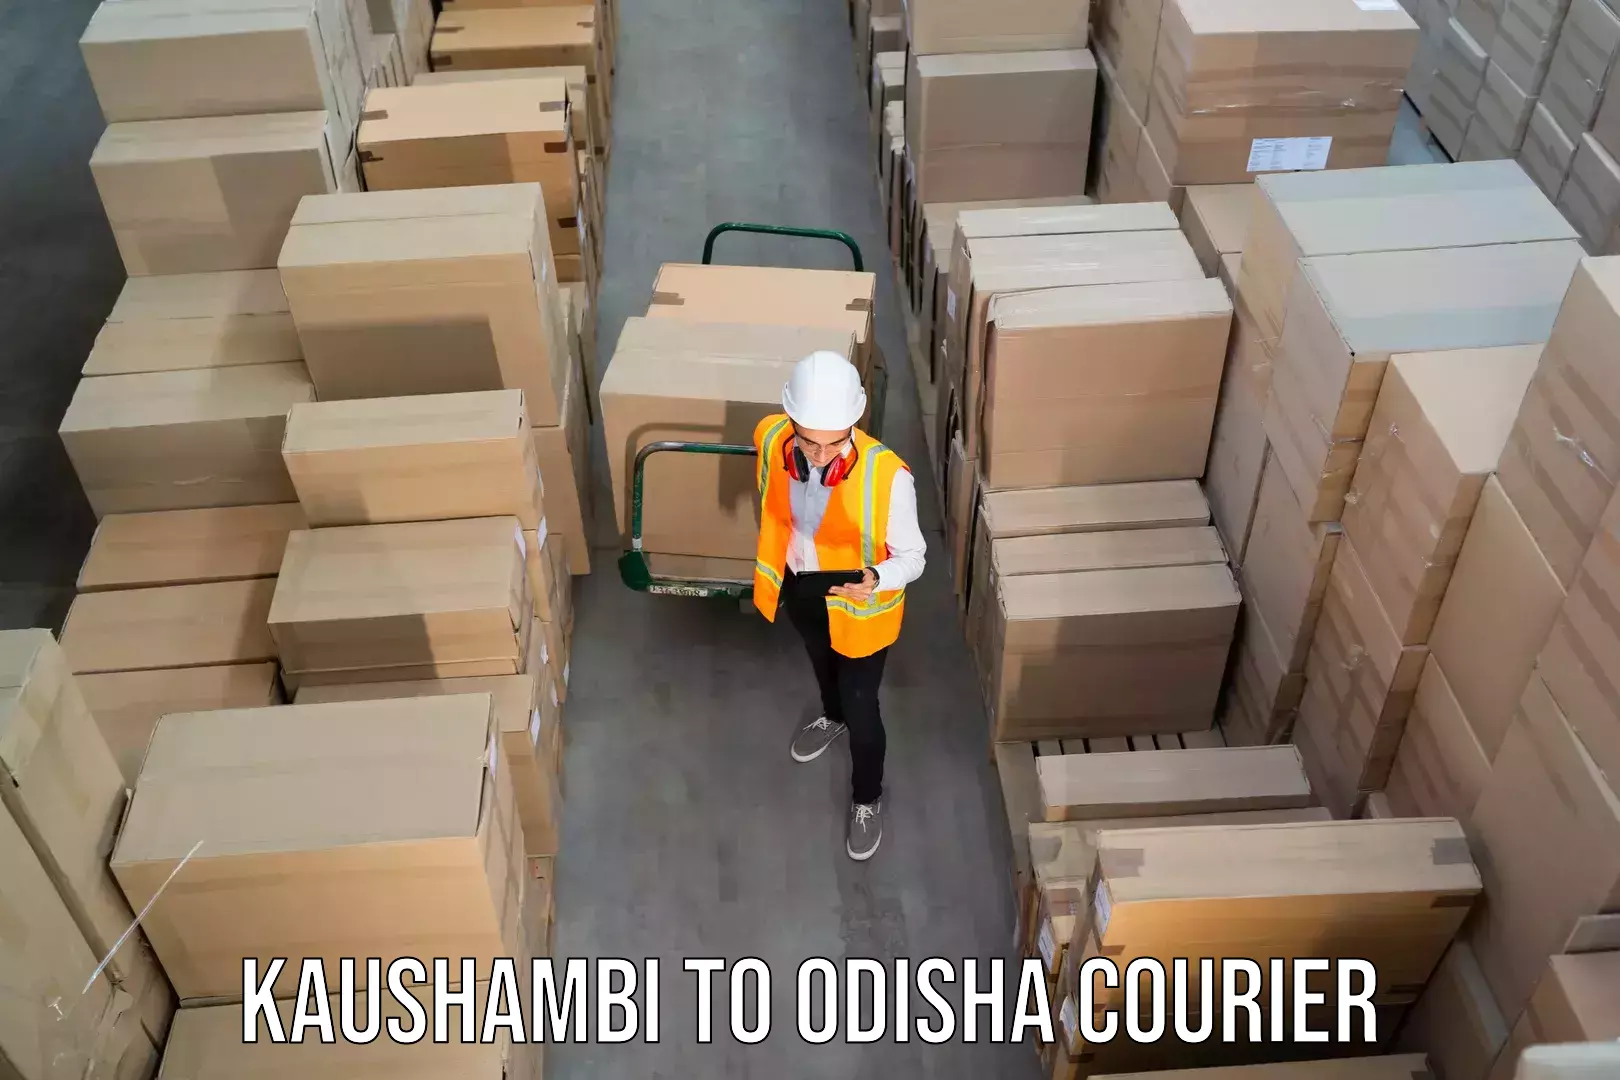 Full-service courier options Kaushambi to Ukhunda